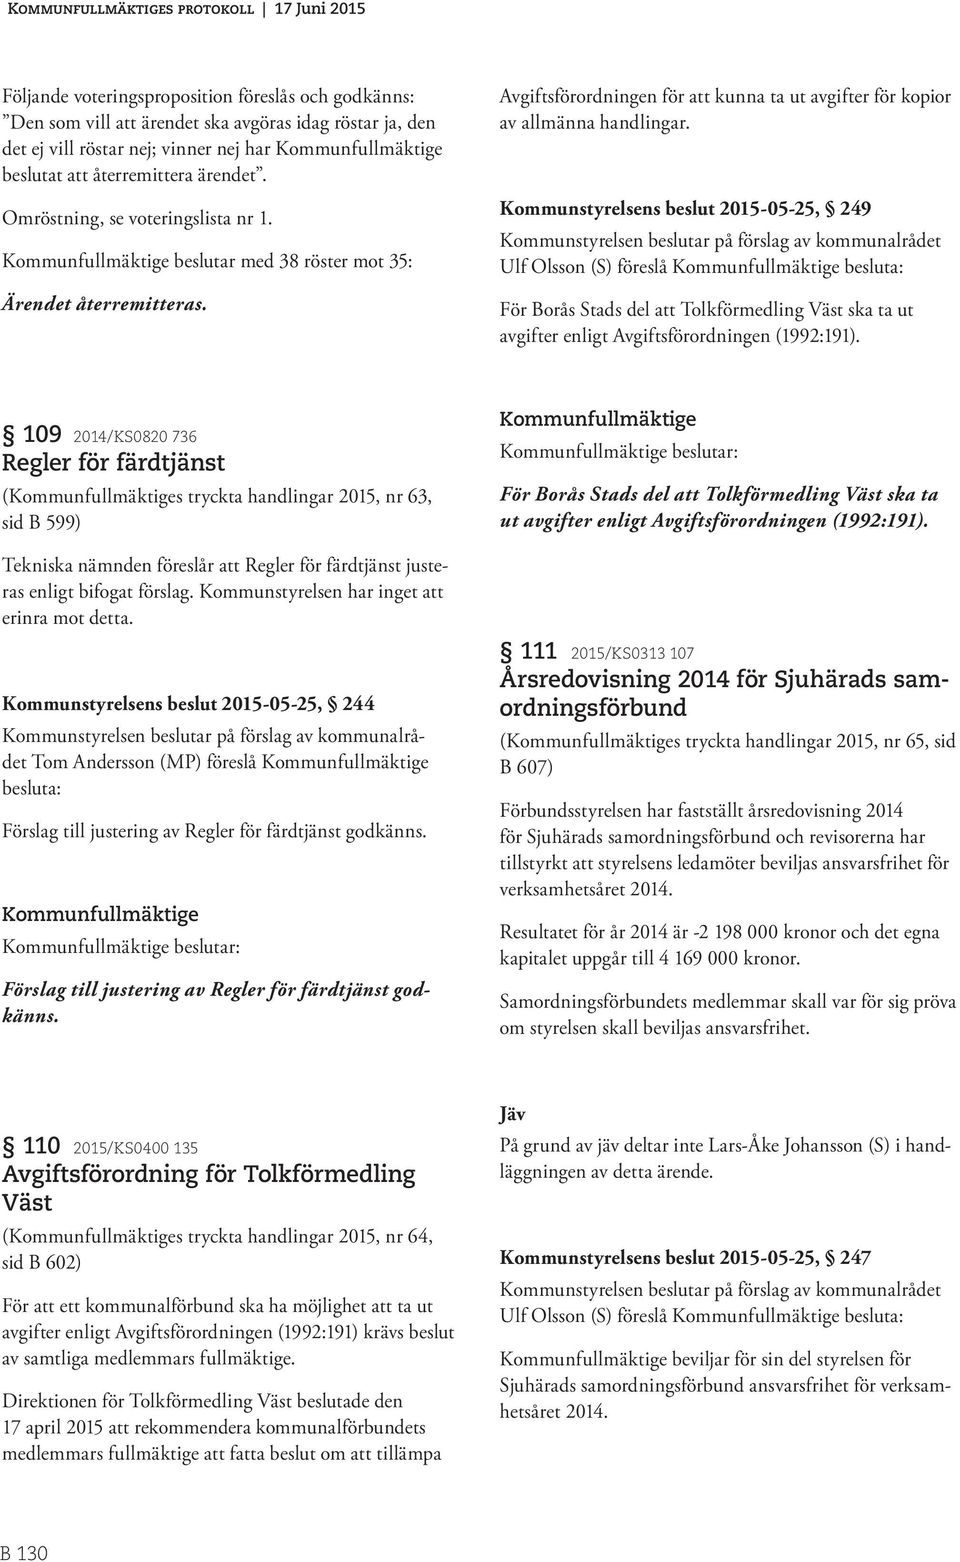 Kommunstyrelsens beslut 2015-05-25, 249 Ulf Olsson (S) föreslå besluta: För Borås Stads del att Tolkförmedling Väst ska ta ut avgifter enligt Avgiftsförordningen (1992:191).